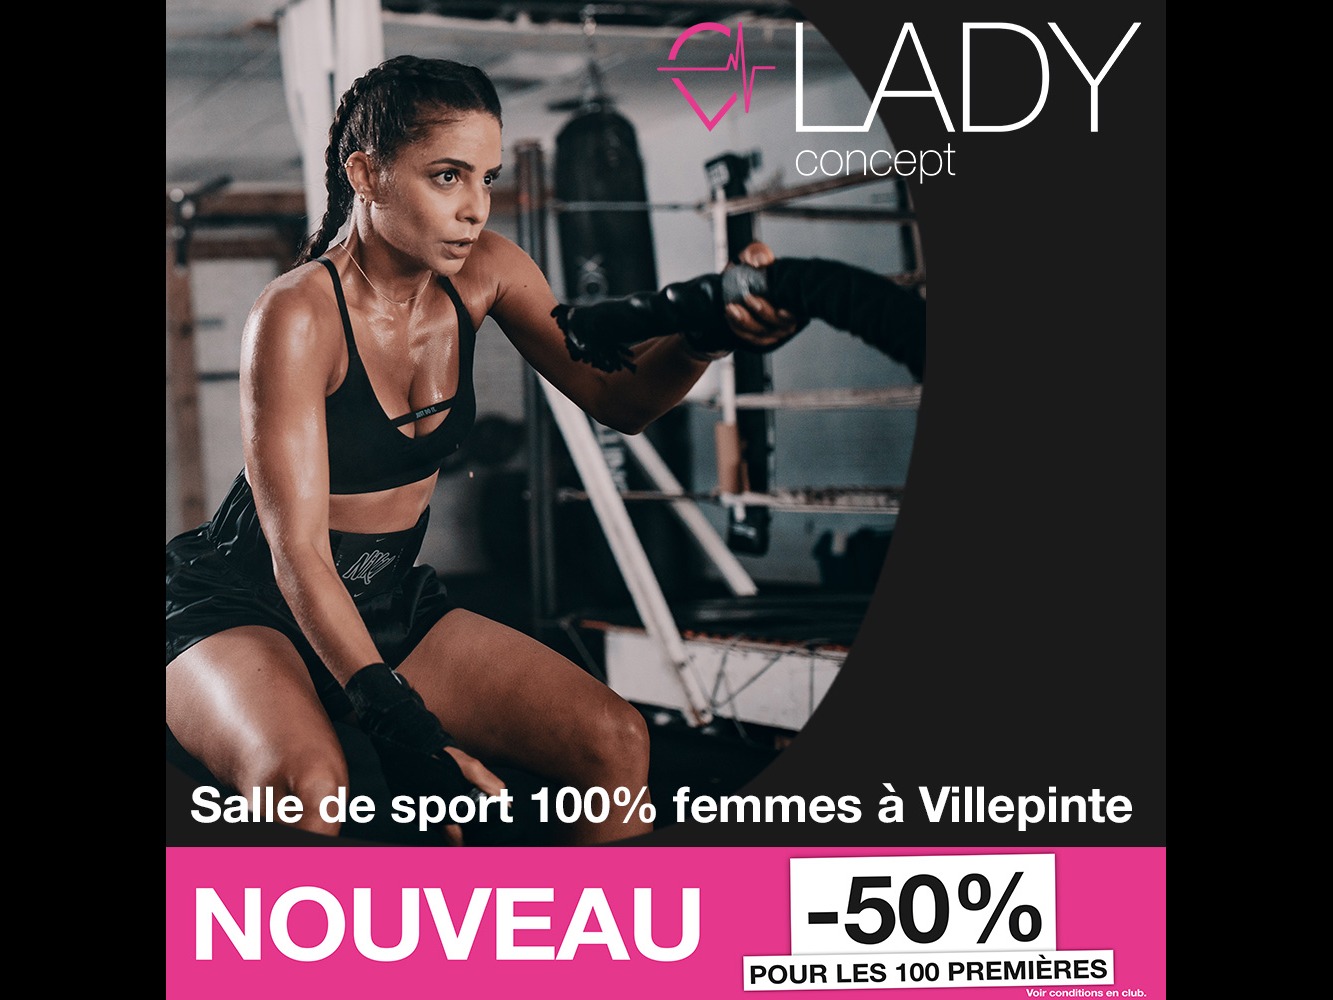 Lady Concept Villepinte